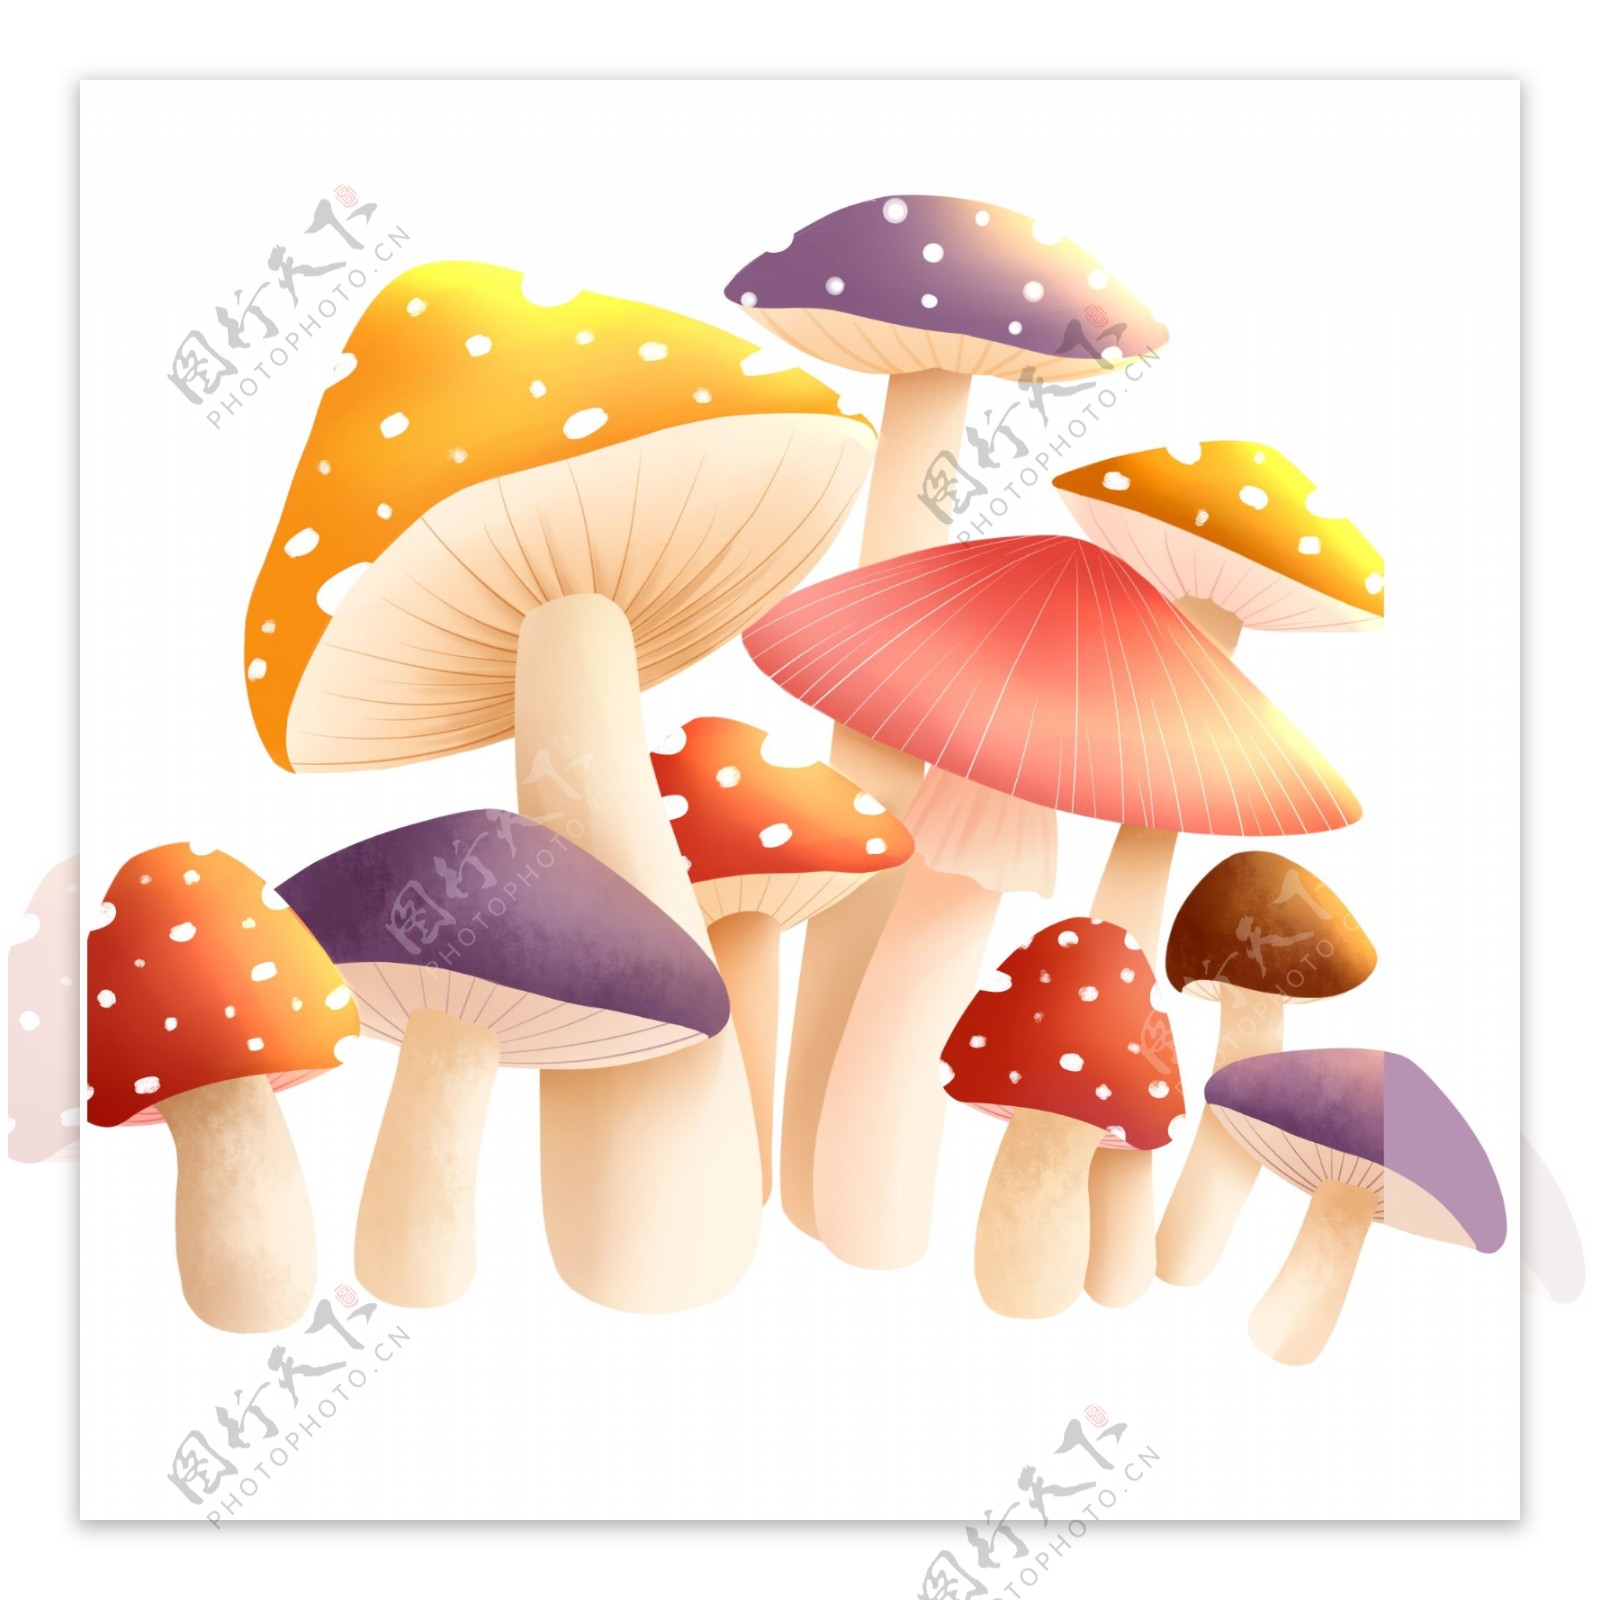 清新彩色蘑菇元素手绘设计